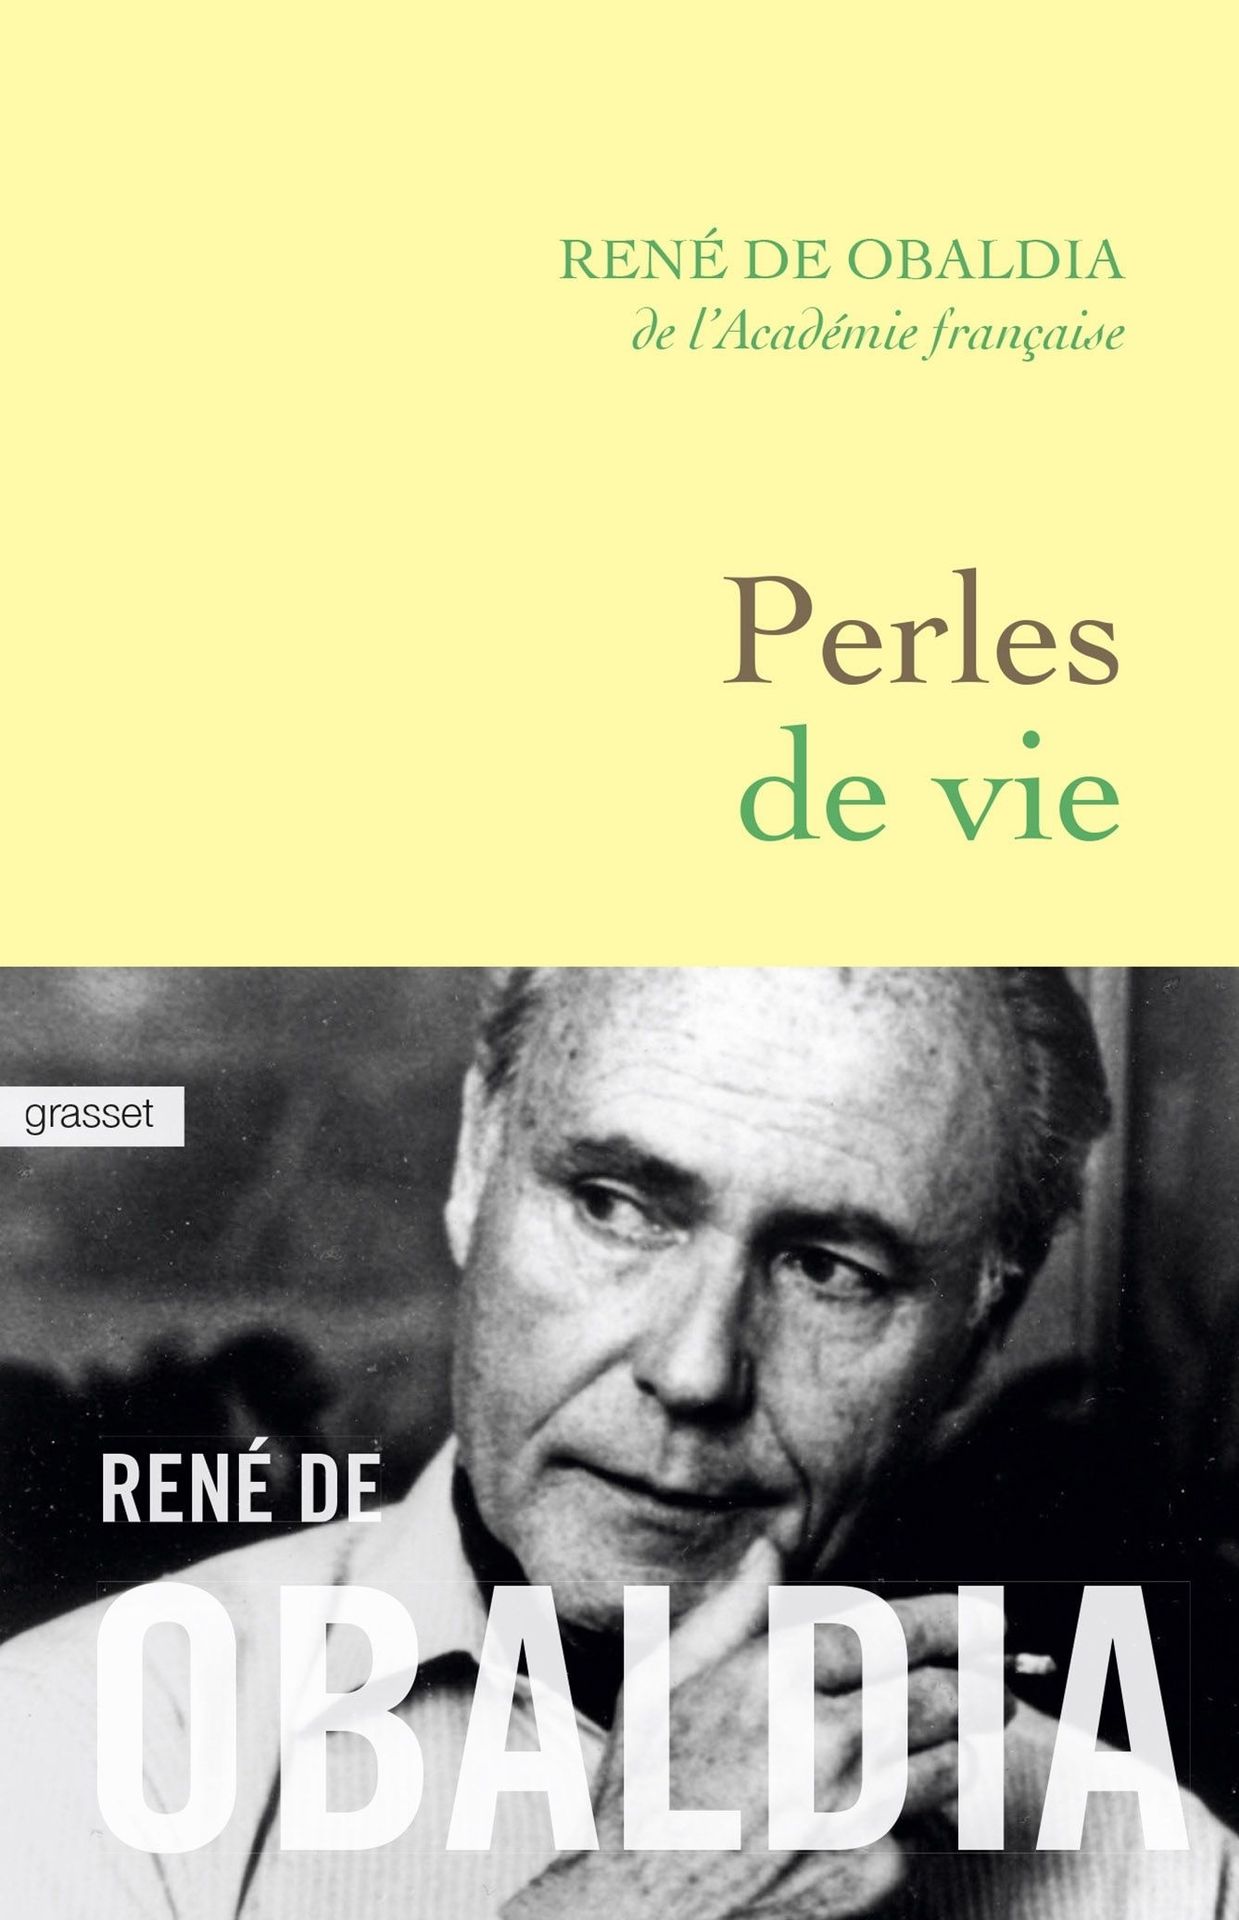 Première de couverture du roman "Perles de vie" de René de Obaldia.